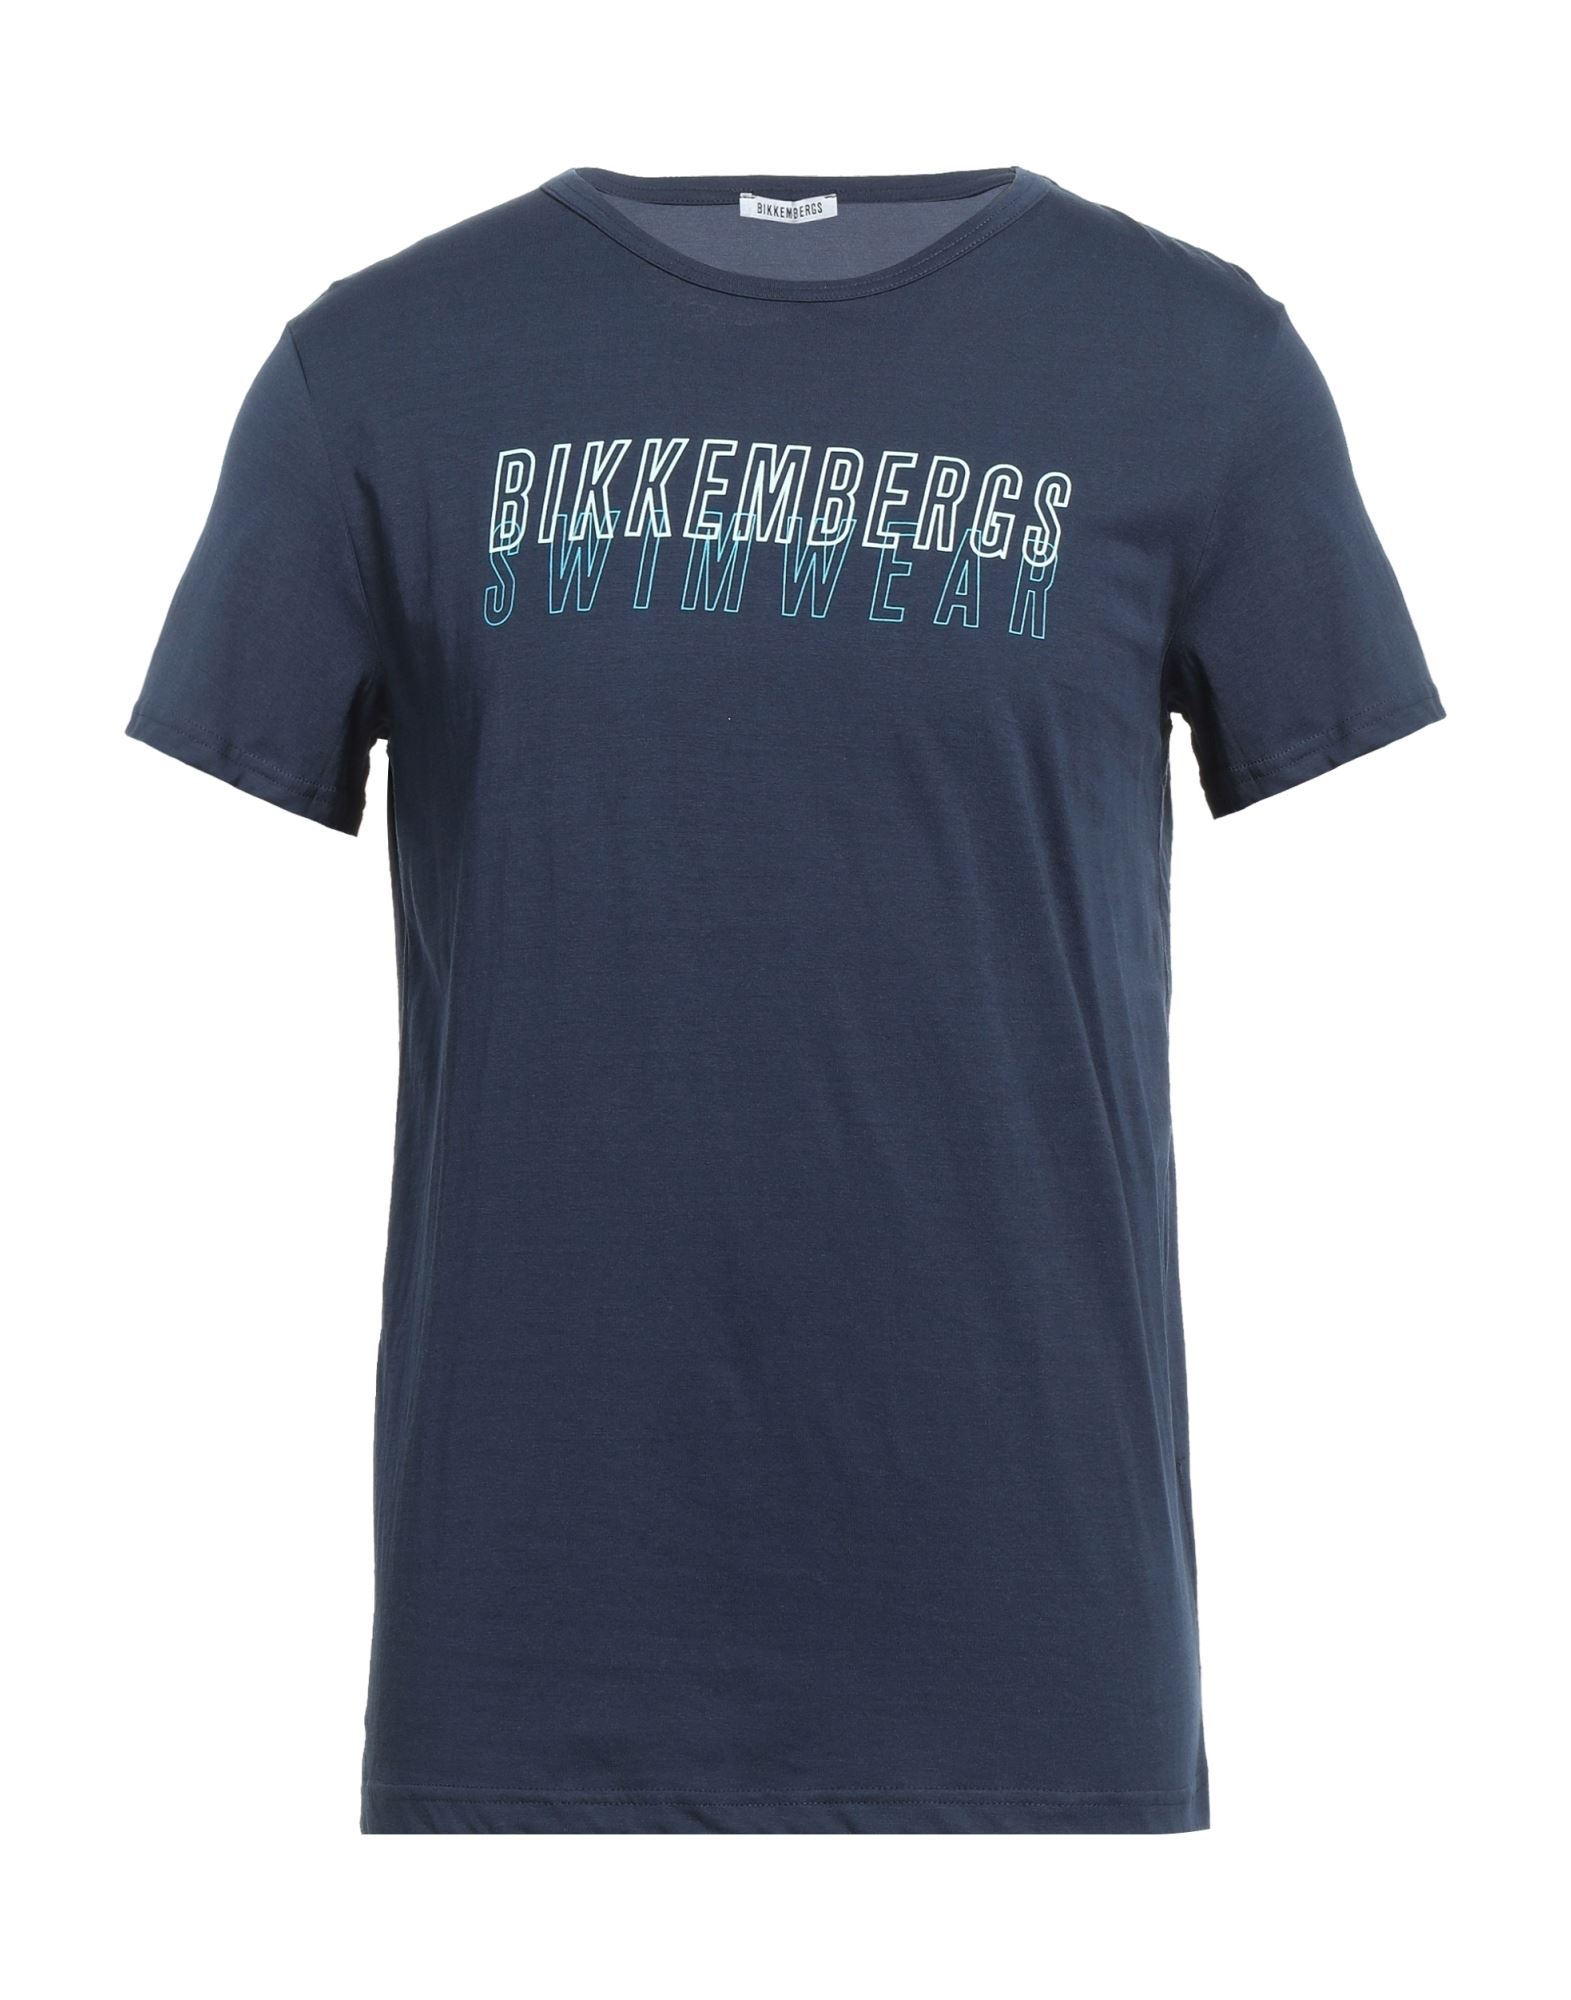 BIKKEMBERGS T-shirts Herren Nachtblau von BIKKEMBERGS